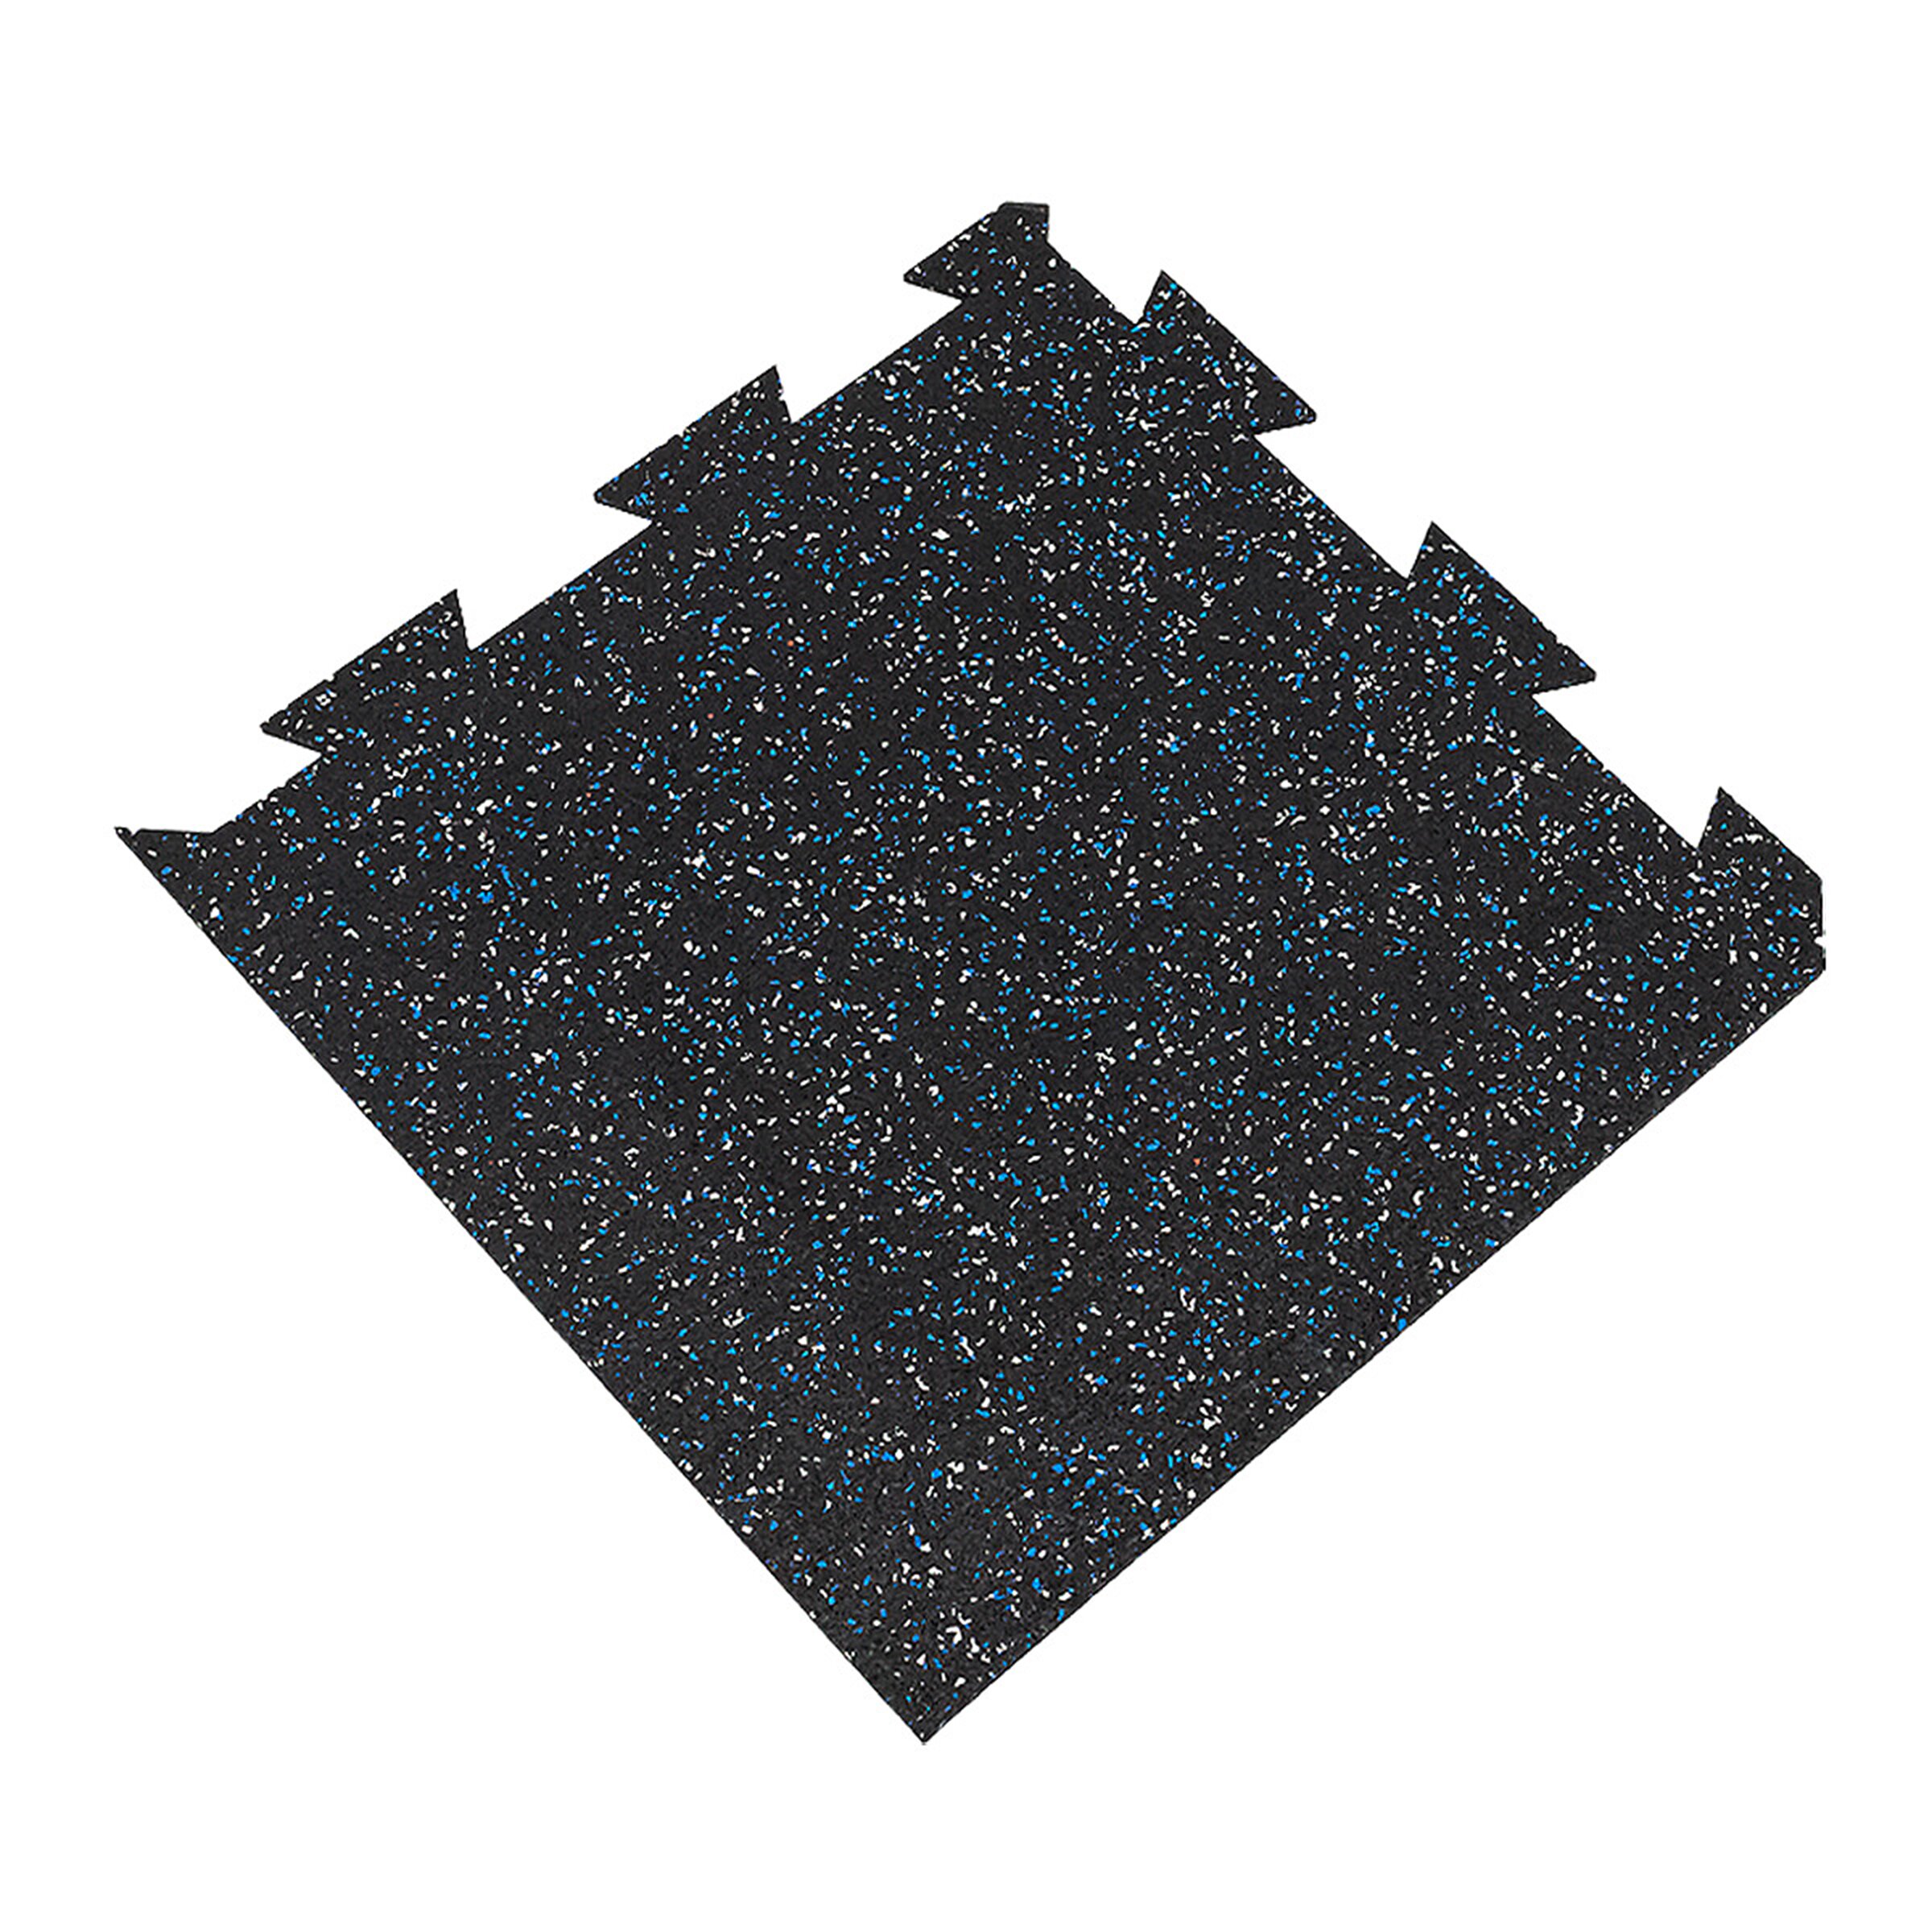 Čierno-bielo-modrá gumová modulová puzzle dlažba (roh) FLOMA FitFlo SF1050 - dĺžka 50 cm, šírka 50 cm, výška 0,8 cm